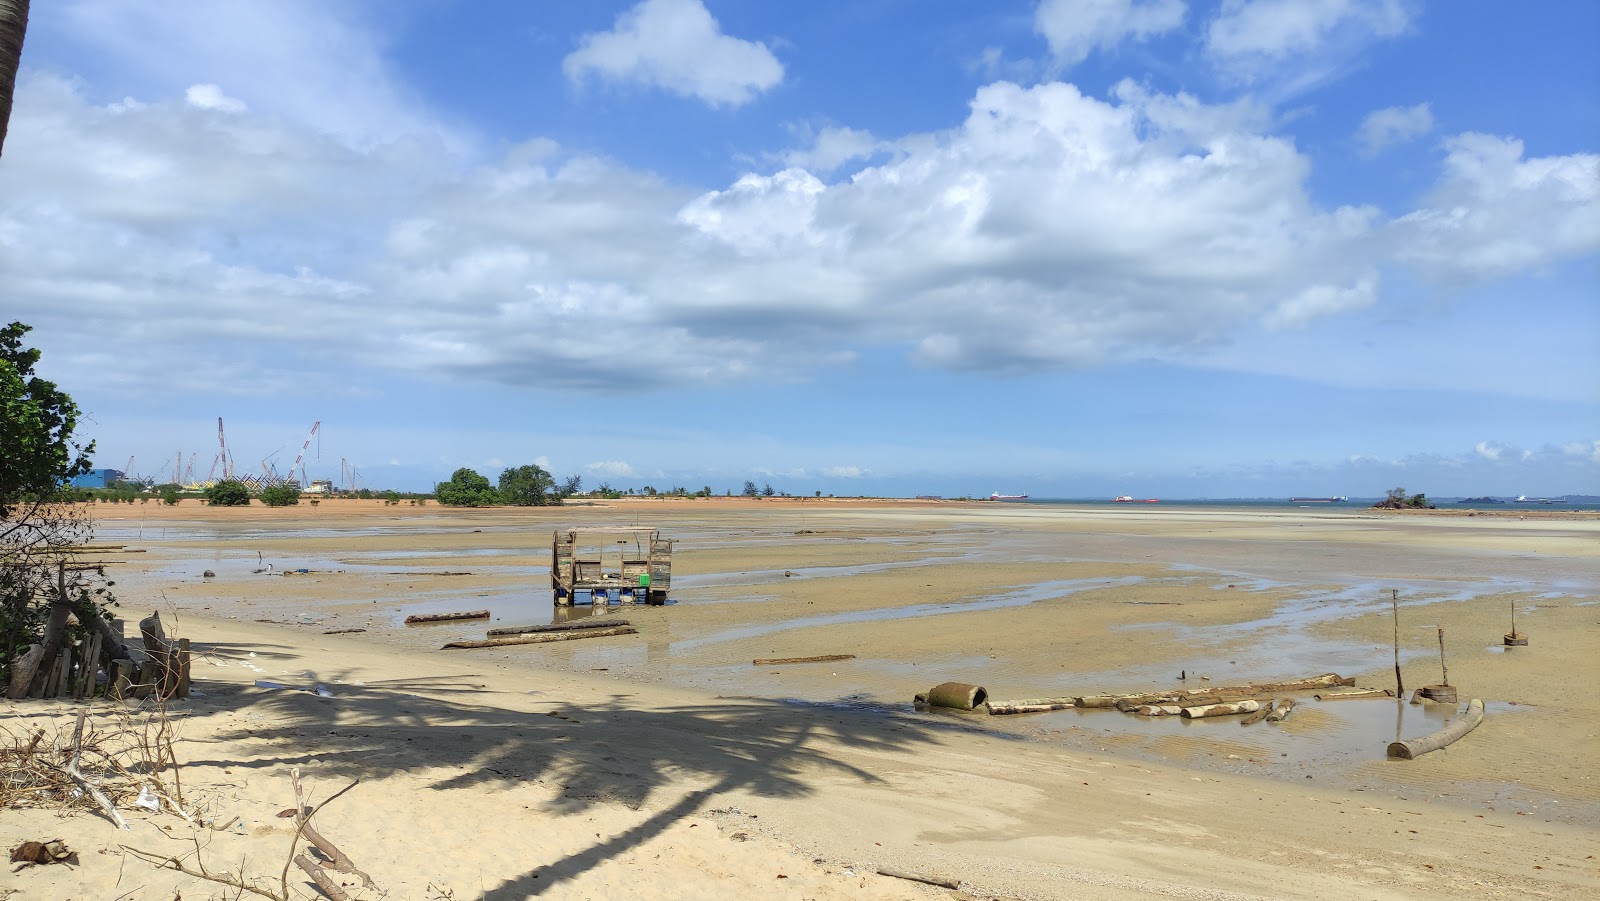 Zdjęcie Pantai Panau z przestronna zatoka